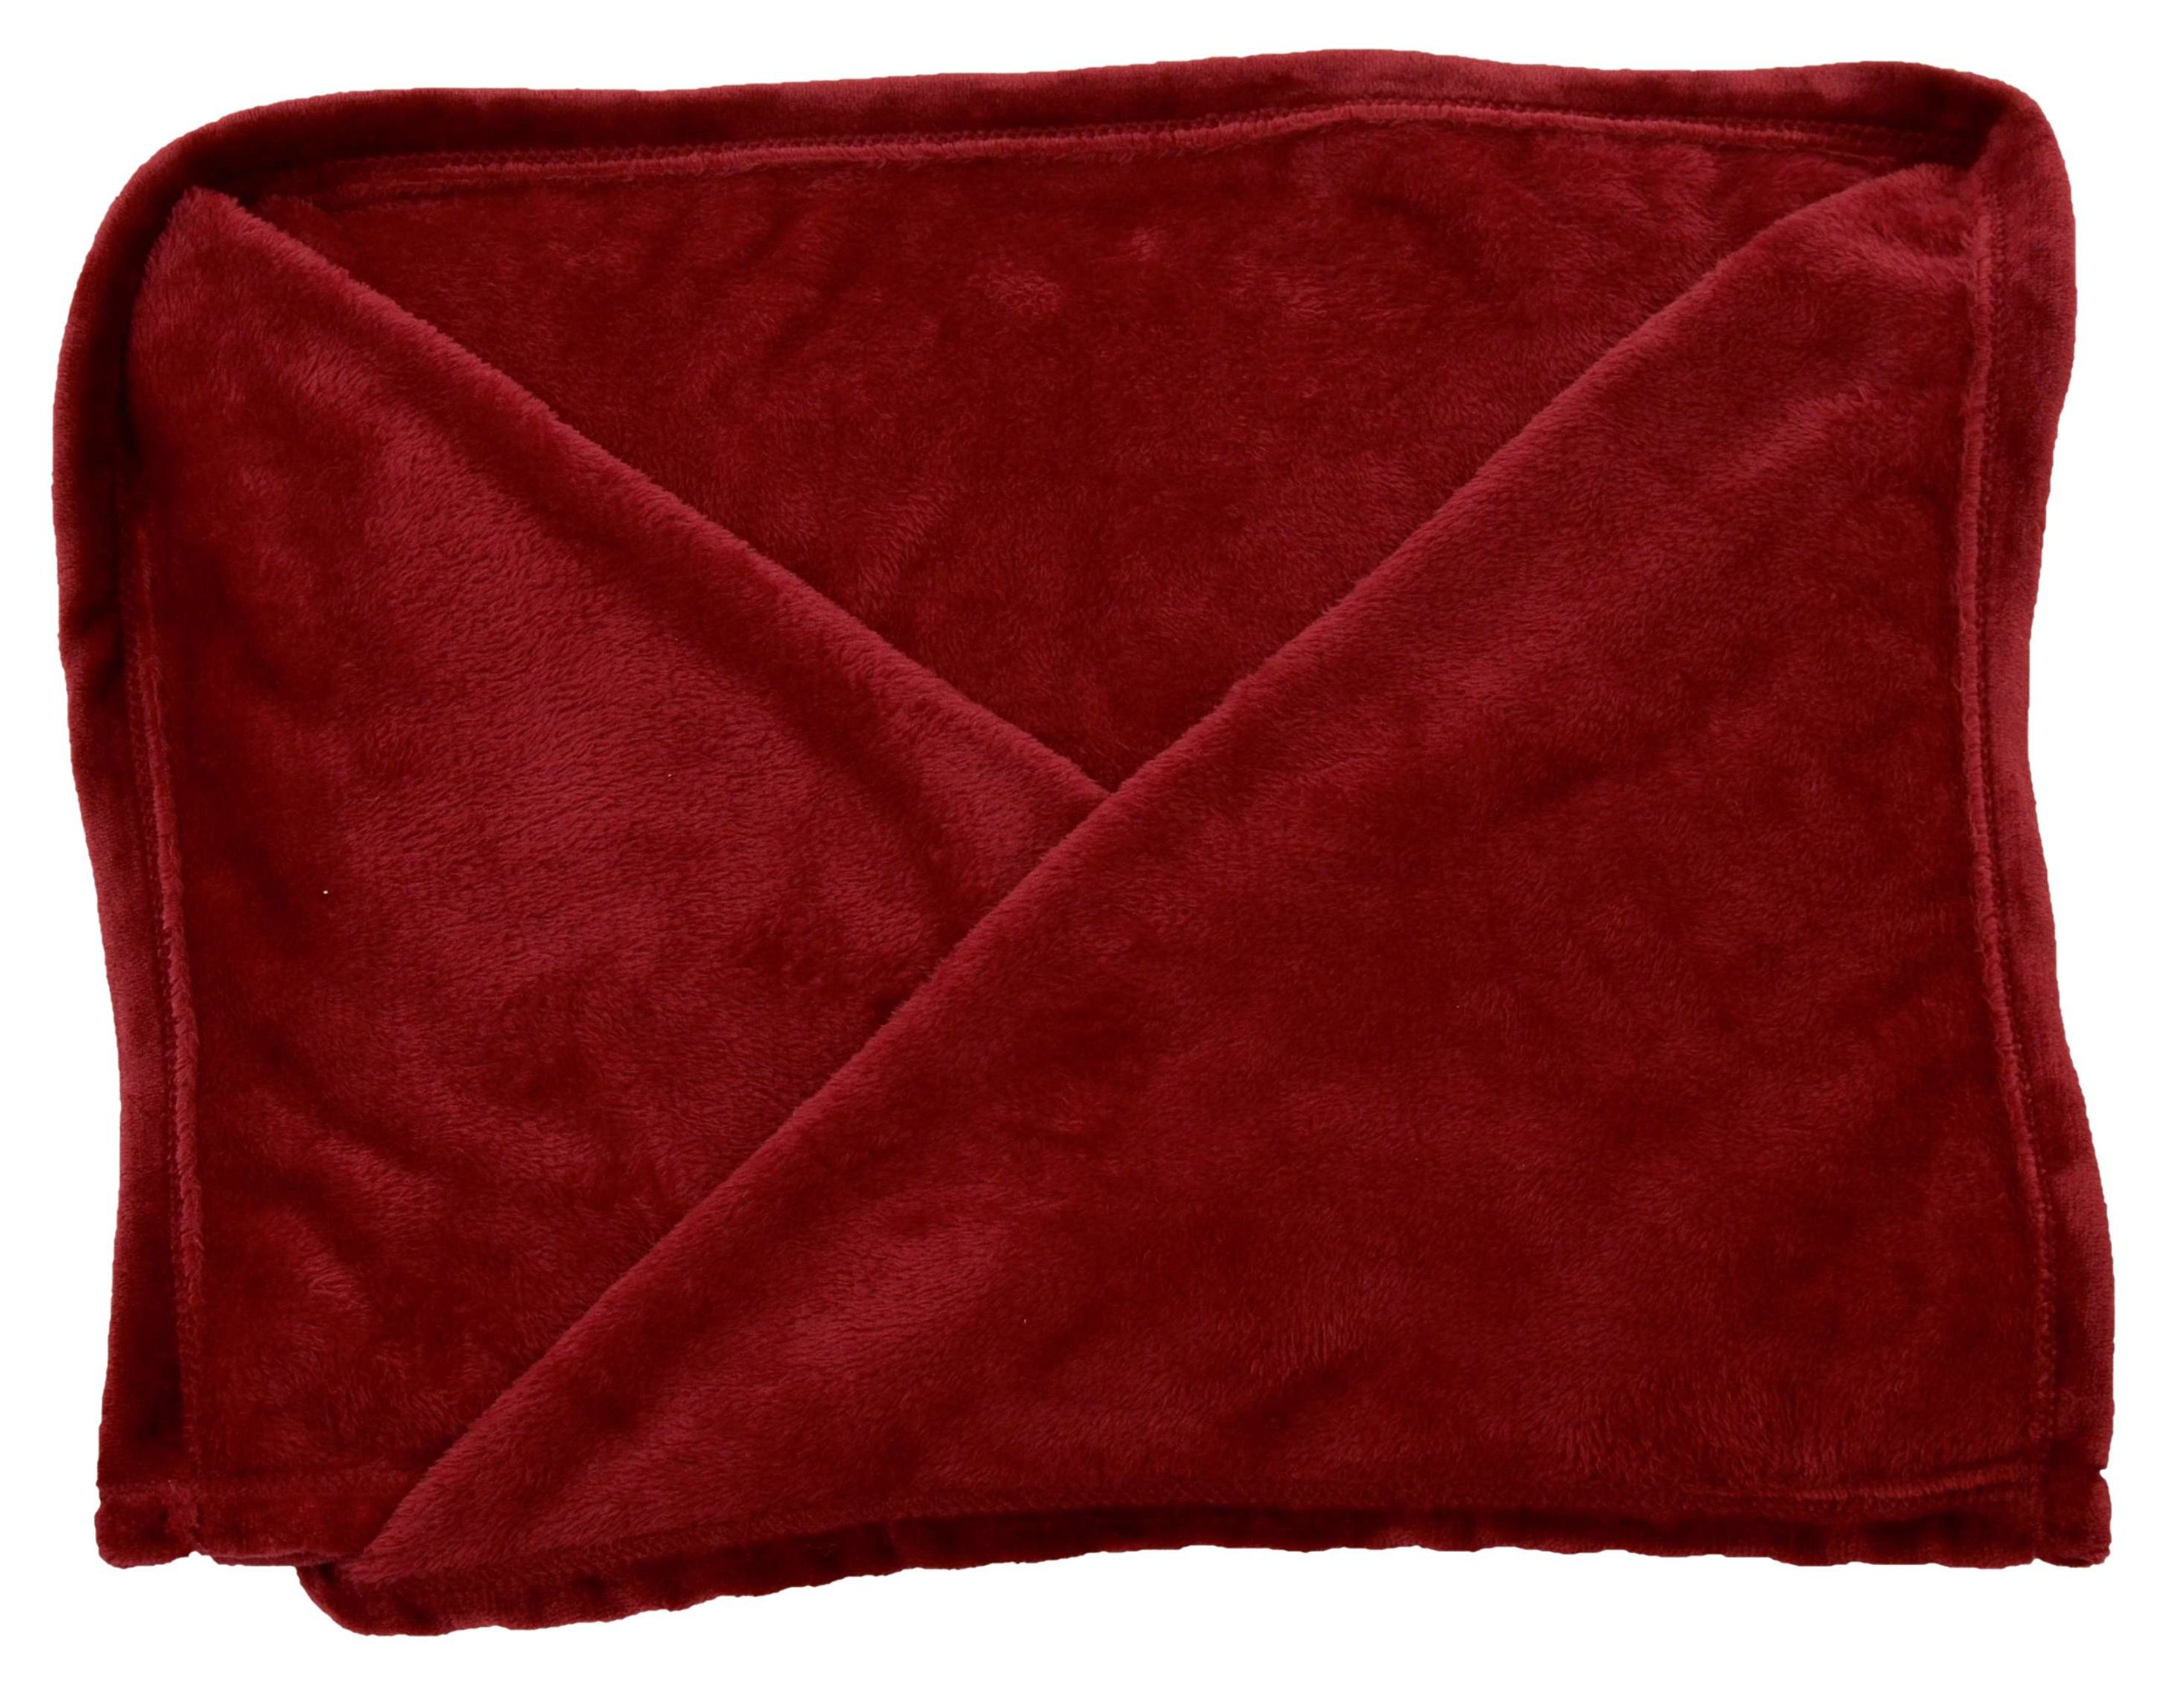 Coperta in pile con maniche XL rosse 170x200cm